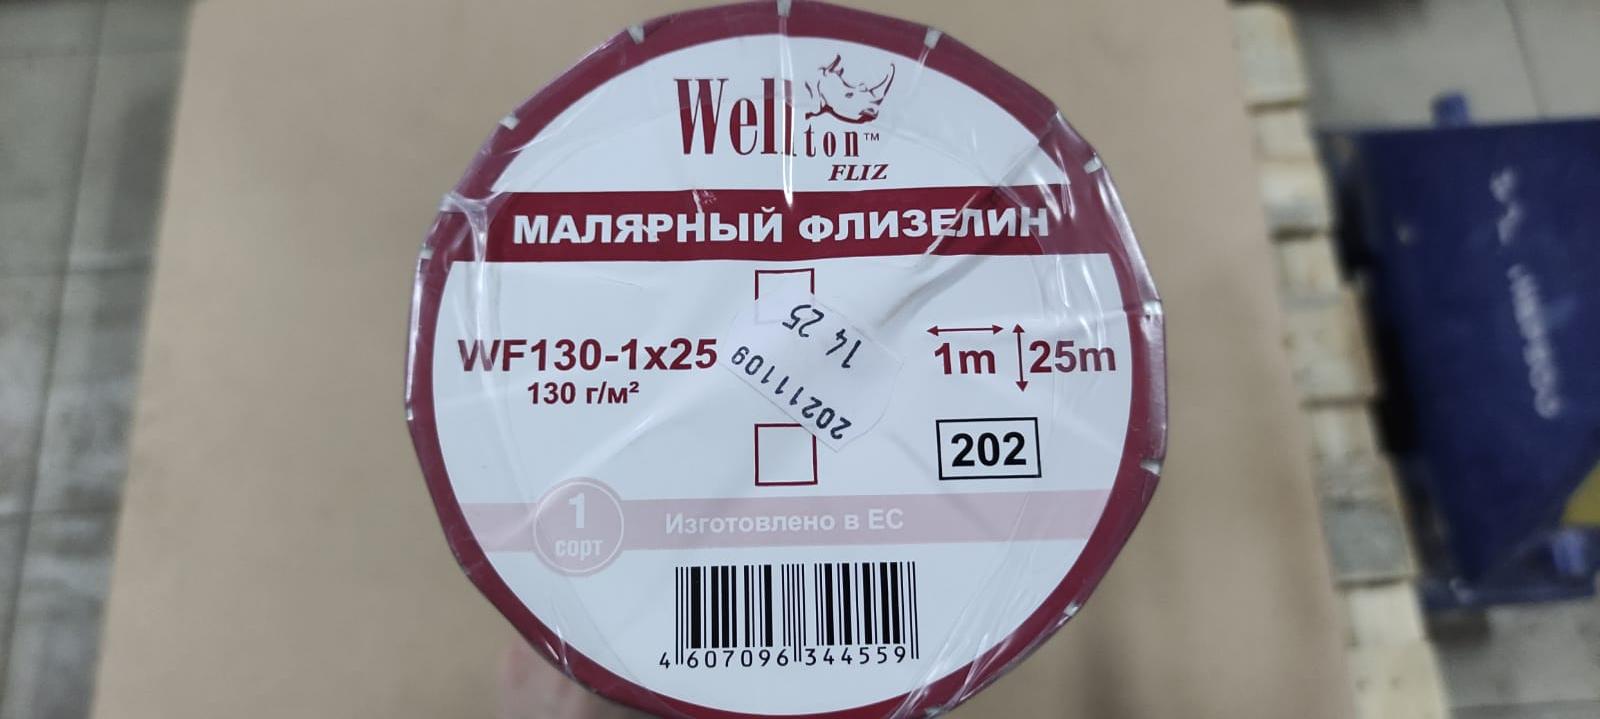 Малярный флизелин WF 130 WelltonFliz 1*25 м